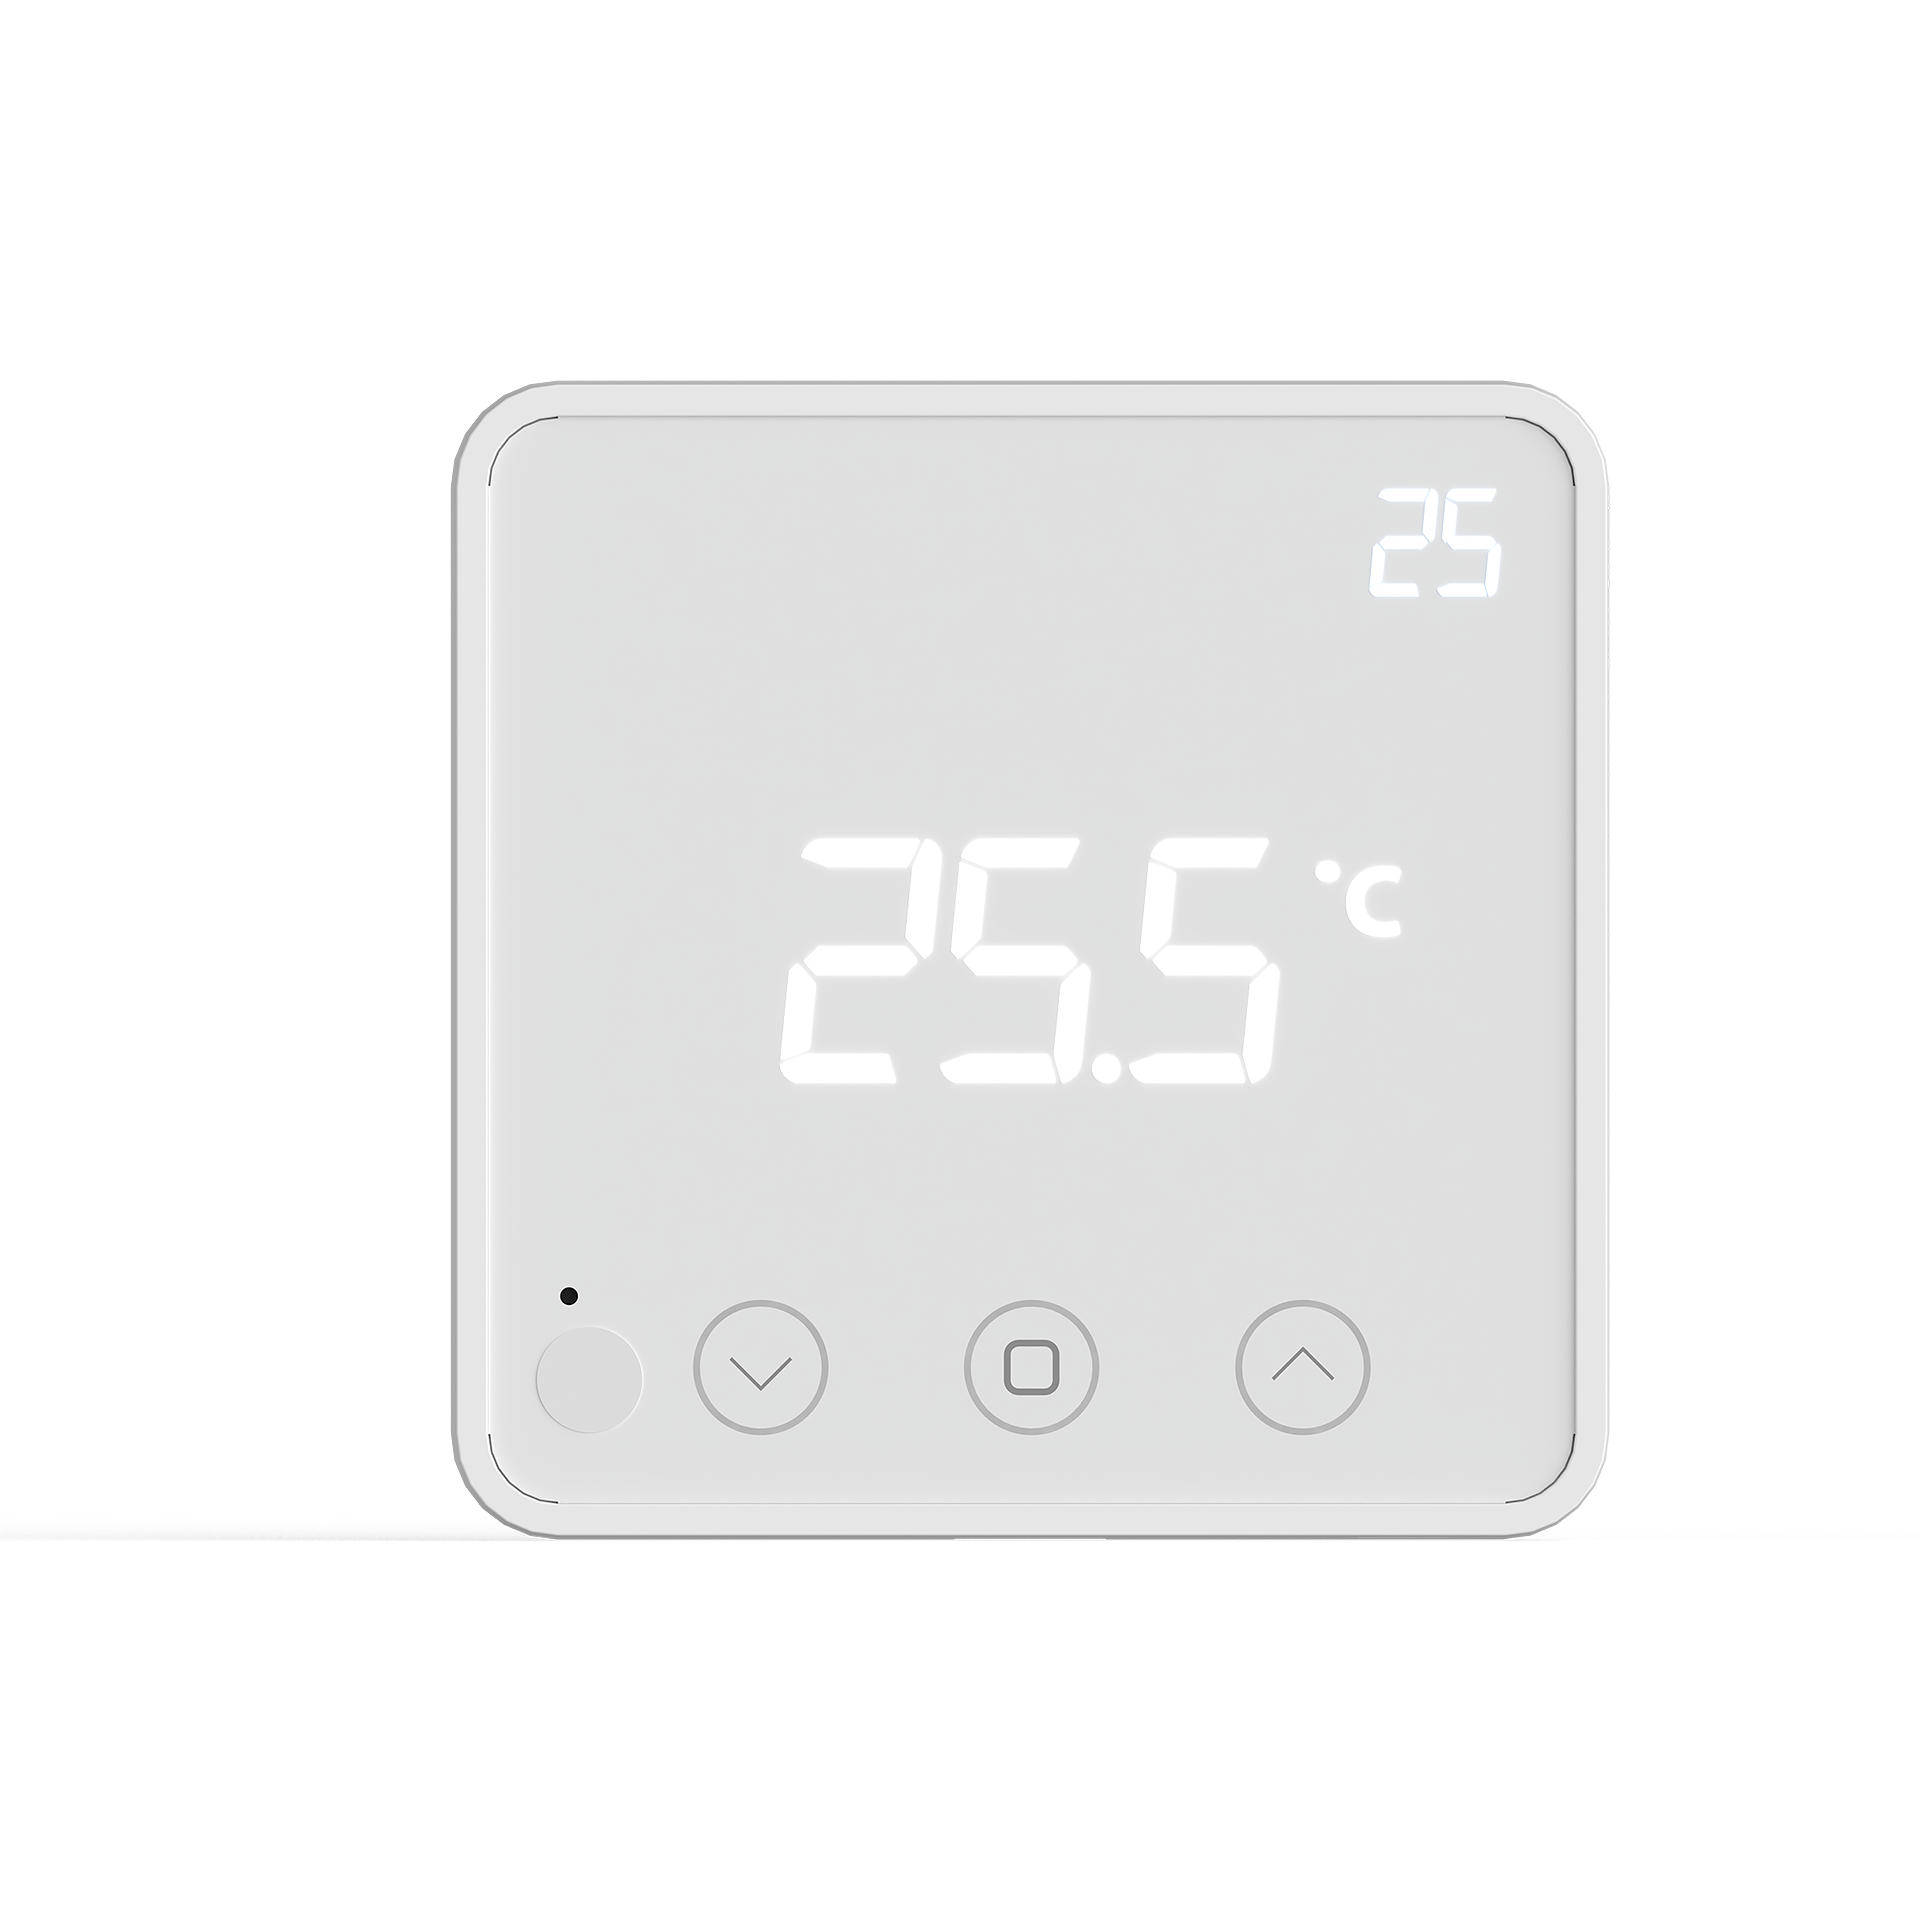 Sensore di temperatura con display e regolazione setpoint